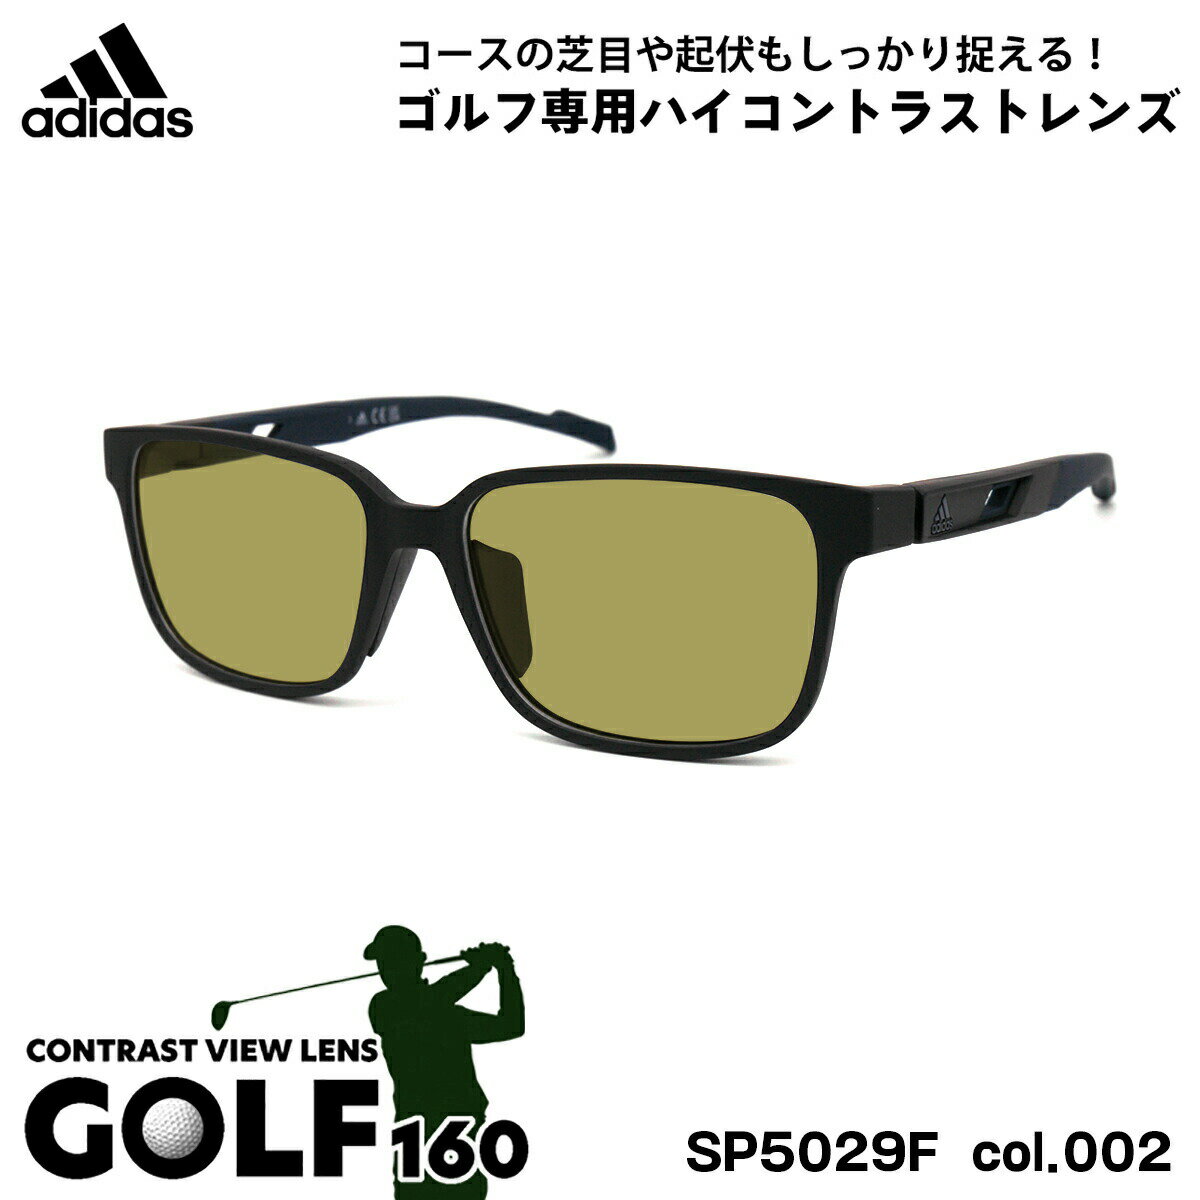 アディダス アディダス サングラス ゴルフ SP5029F (SP5029F/V) col.002 56mm adidas アジアンフィット 国内正規品 UVカット メンズ レディース GOLF160